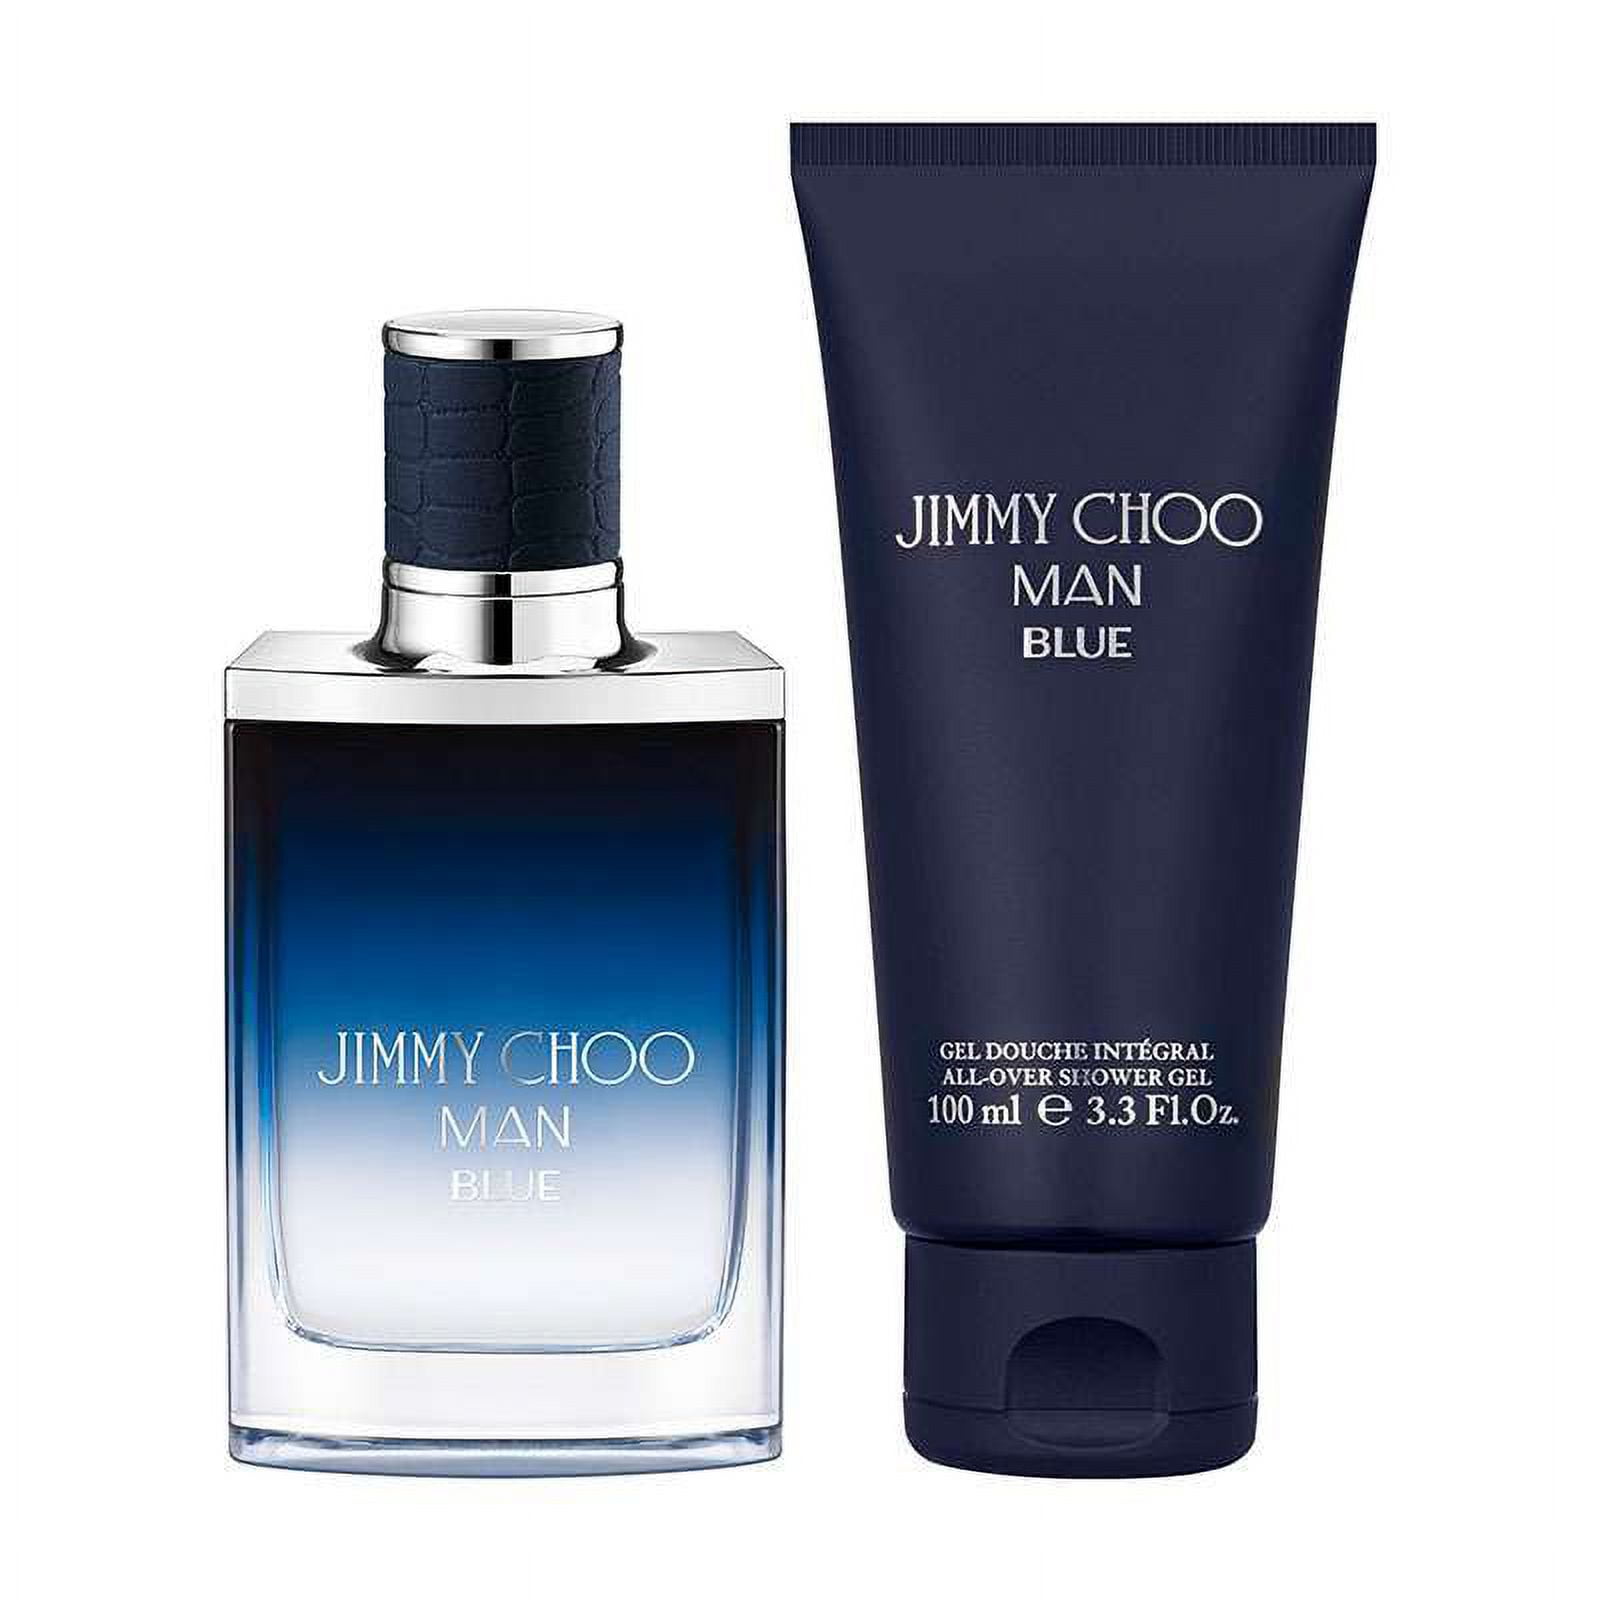 Jimmy Choo Man Blue Eau De Toilette 100ml Spray